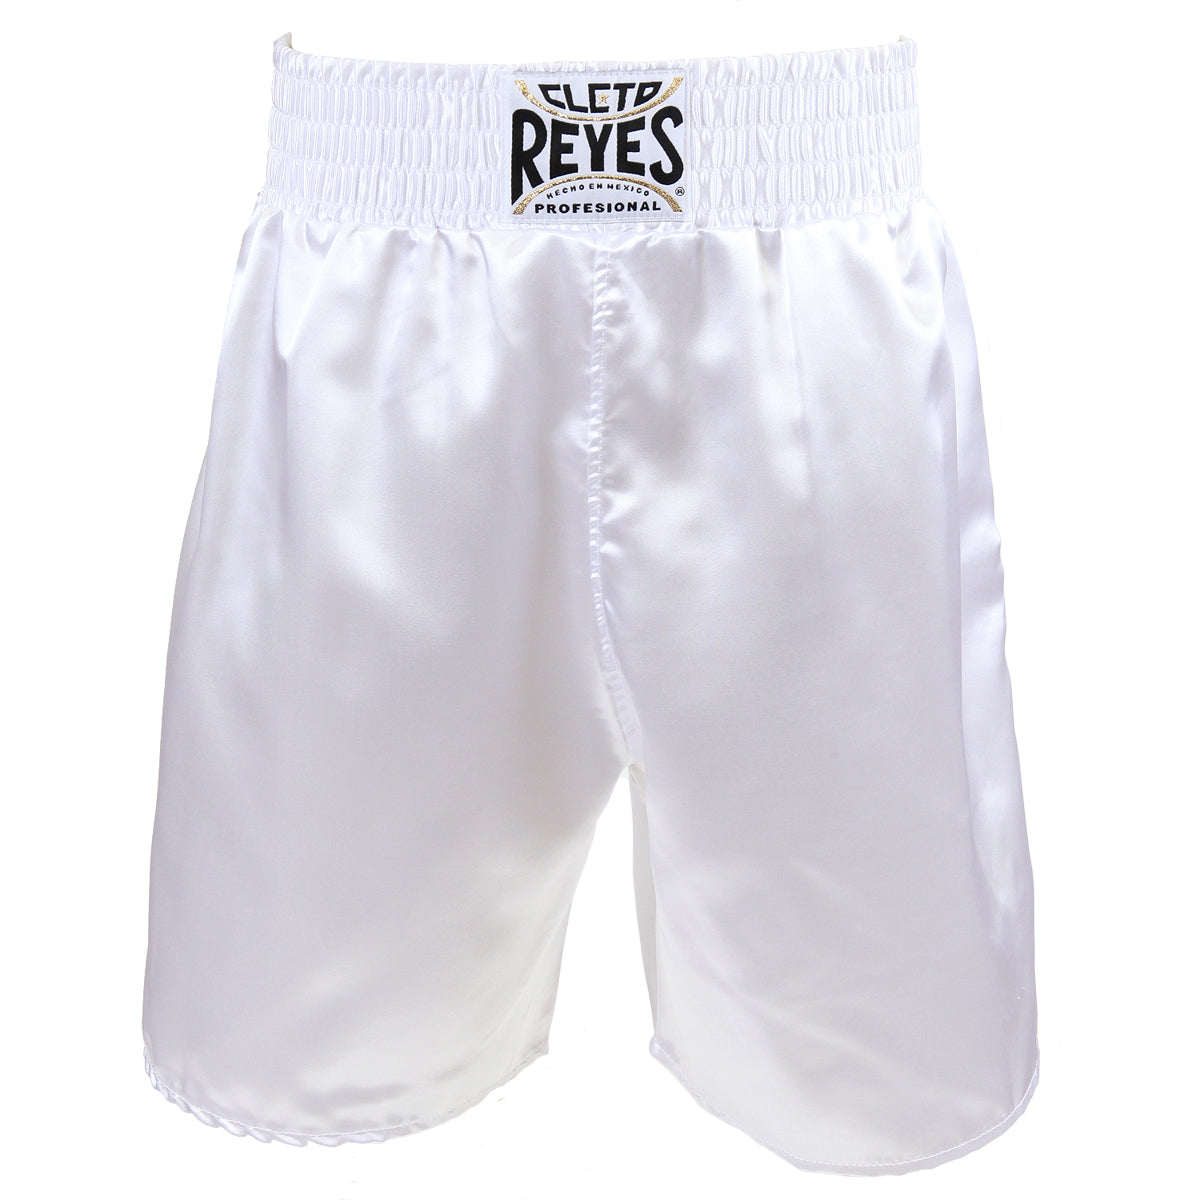 Cleto Reyes Satin Classic Boxing Trunks - XL (44") - White Cleto Reyes